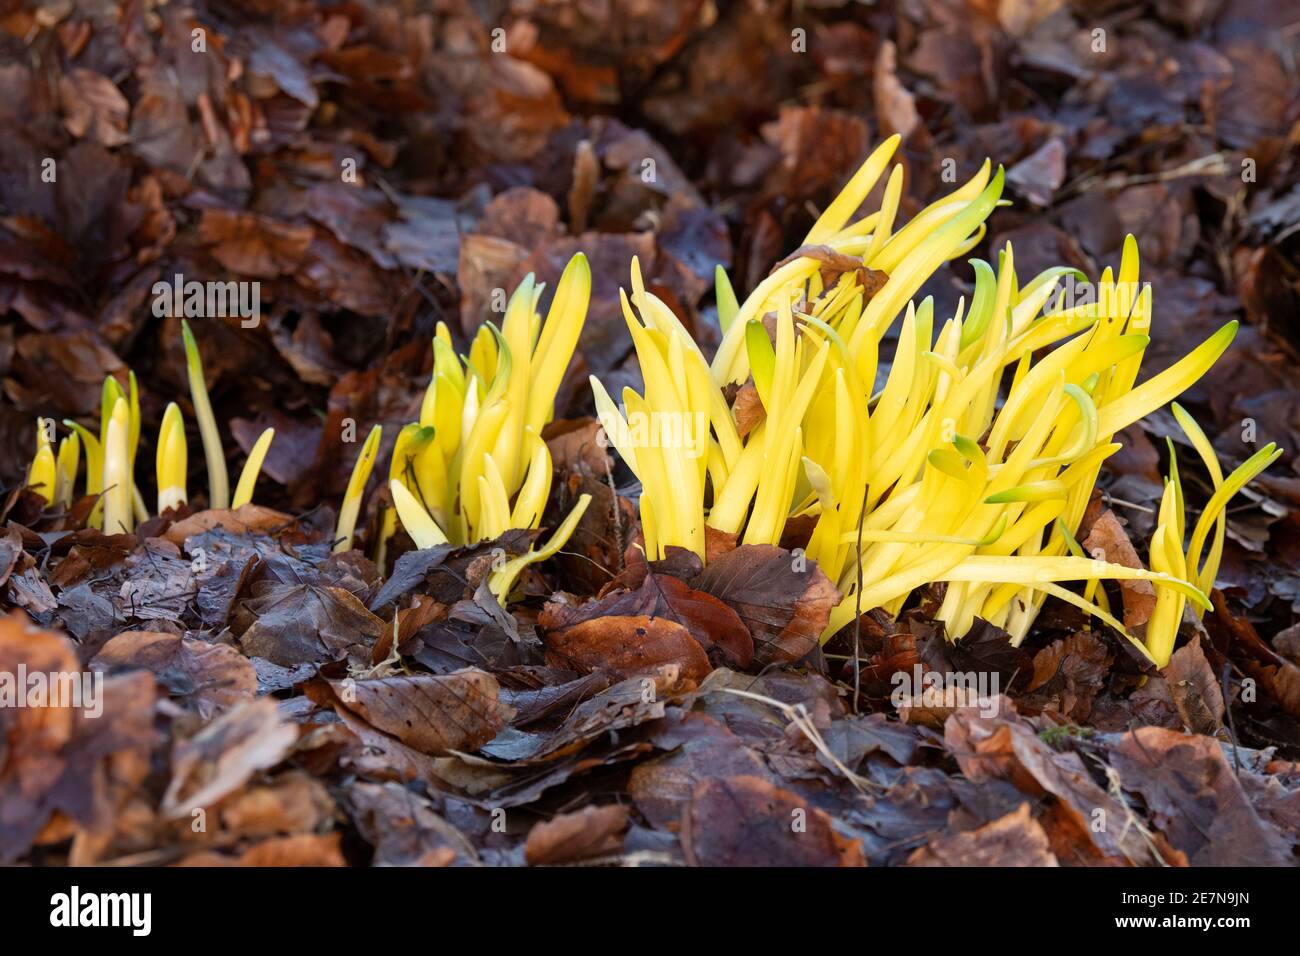 Clorosis (amarillamiento) de hojas de narciso que han sido cubiertas con hojarasca profunda mientras crecen privándolas de la luz solar - Escocia, Reino Unido Foto de stock